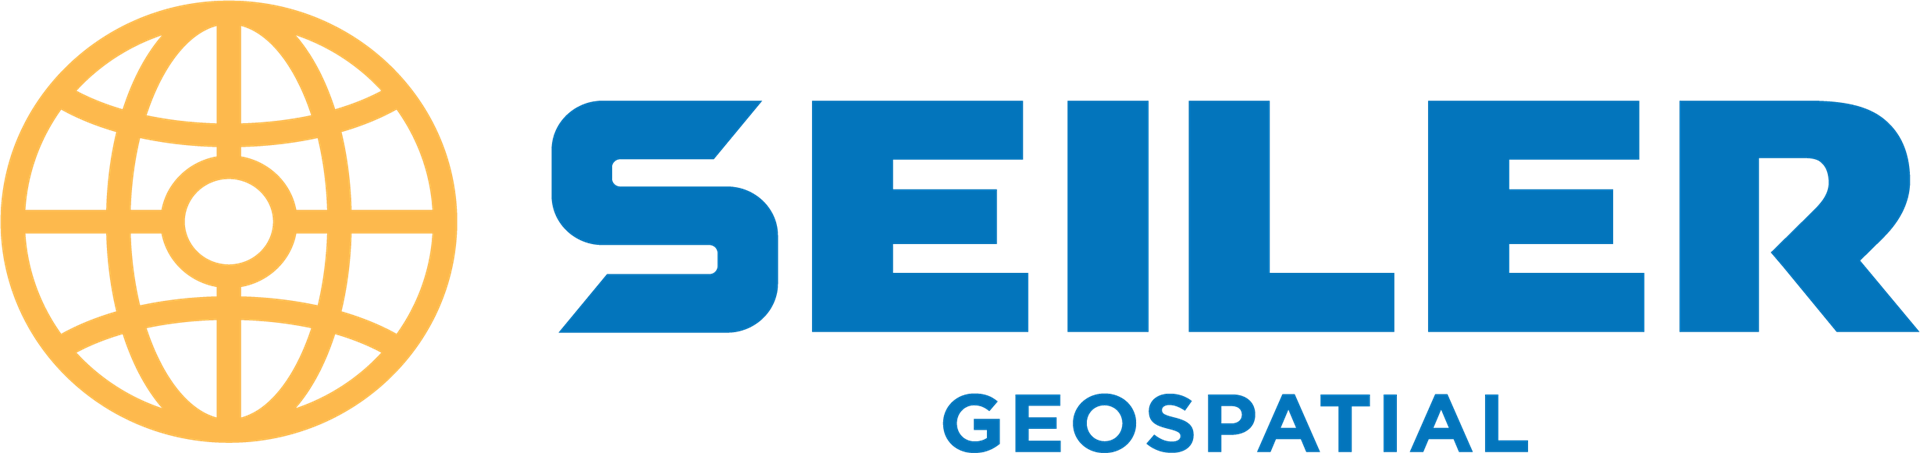 Seiler Geospatial logo